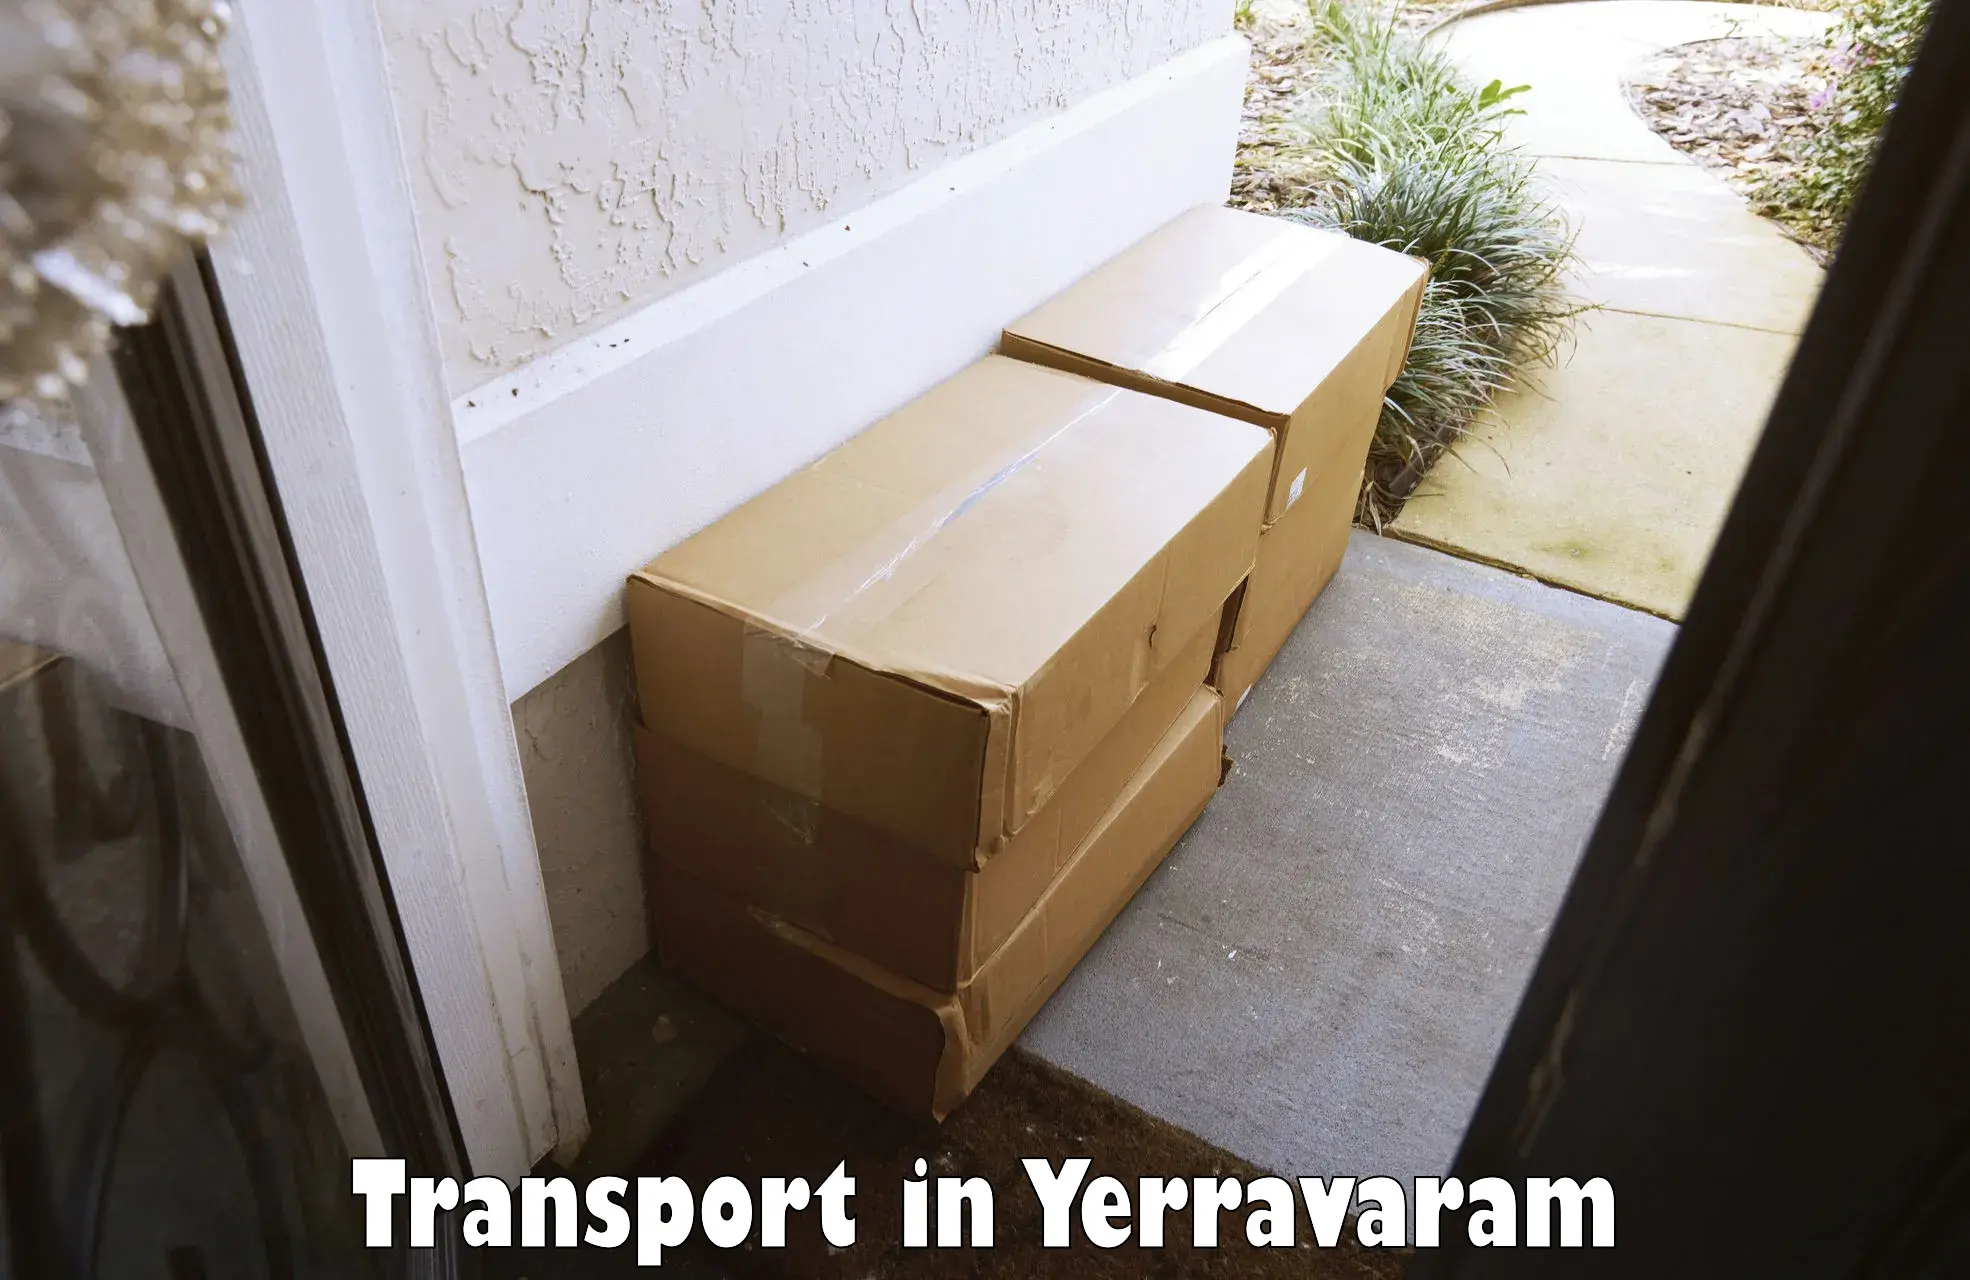 Online transport in Yerravaram